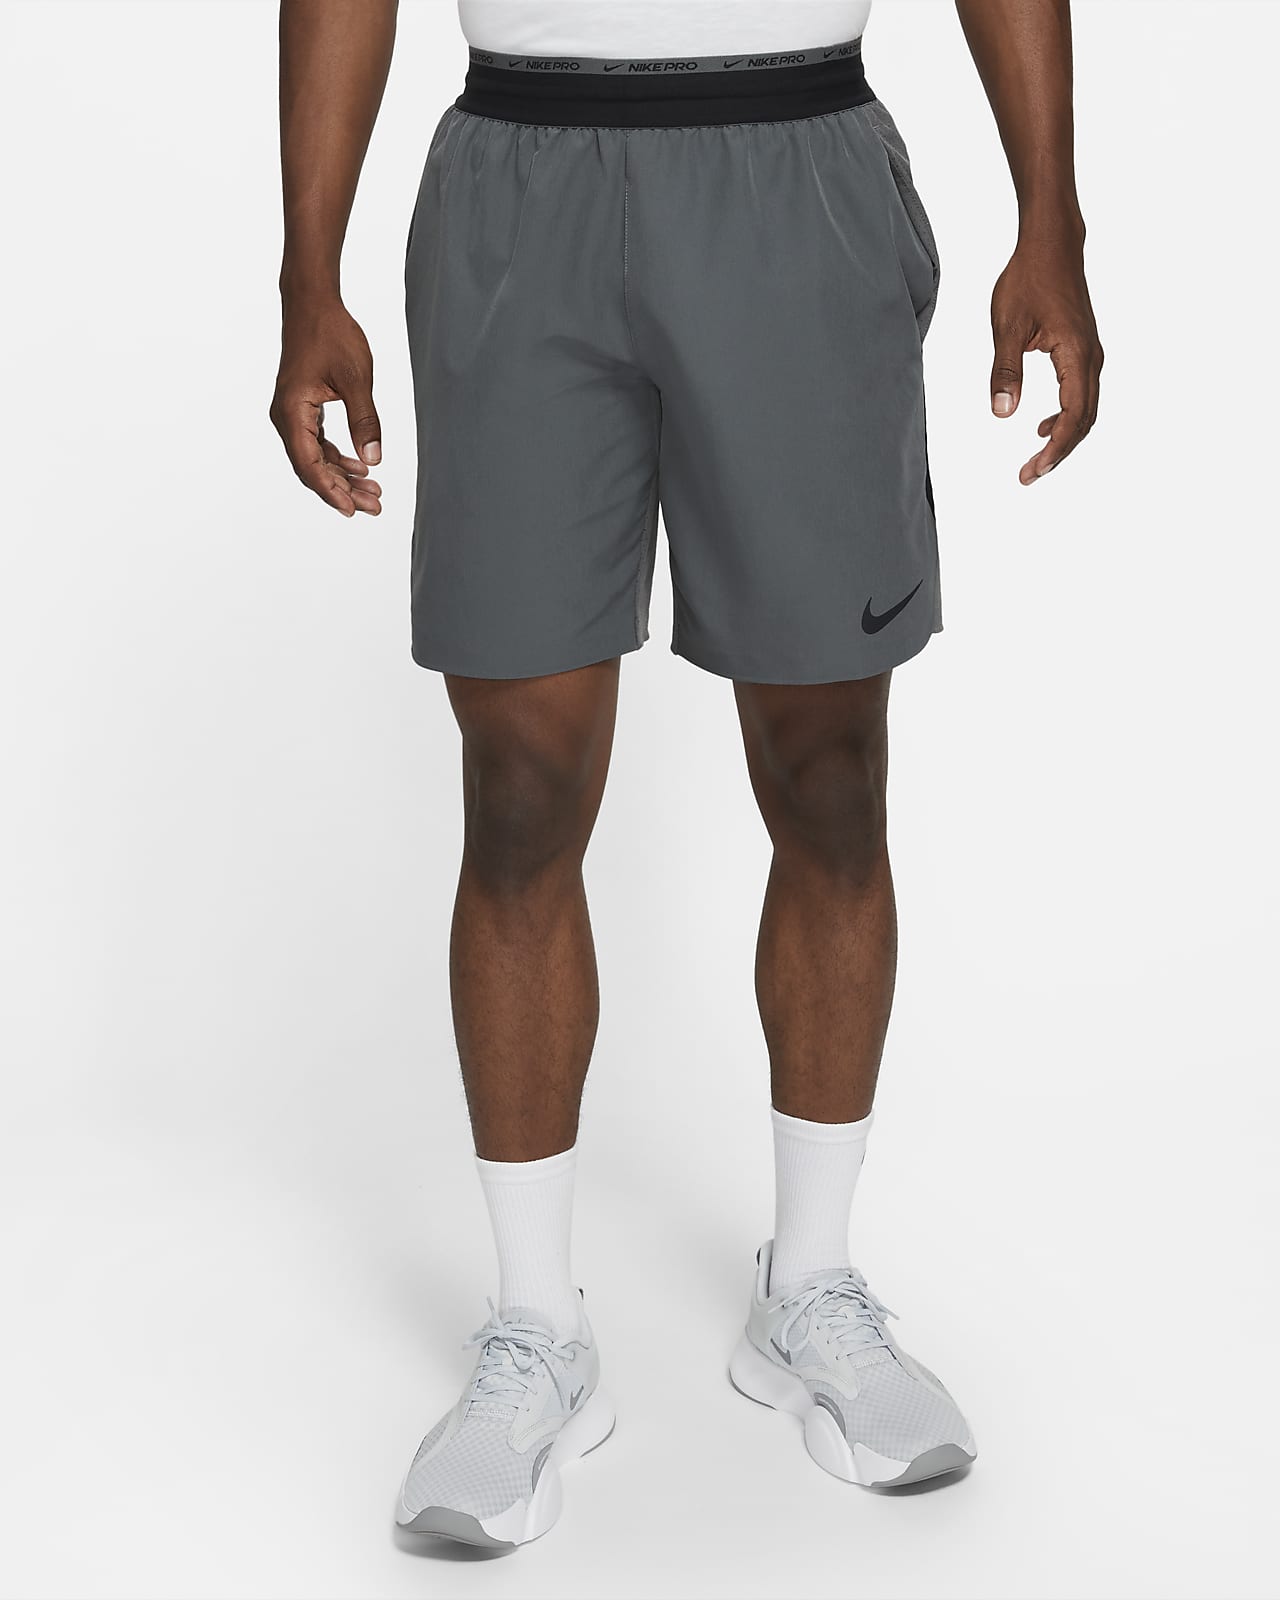 Nike Dri-FIT Flex Rep Pro Collection Pantalón corto de entrenamiento sin forro de 20 cm - Hombre